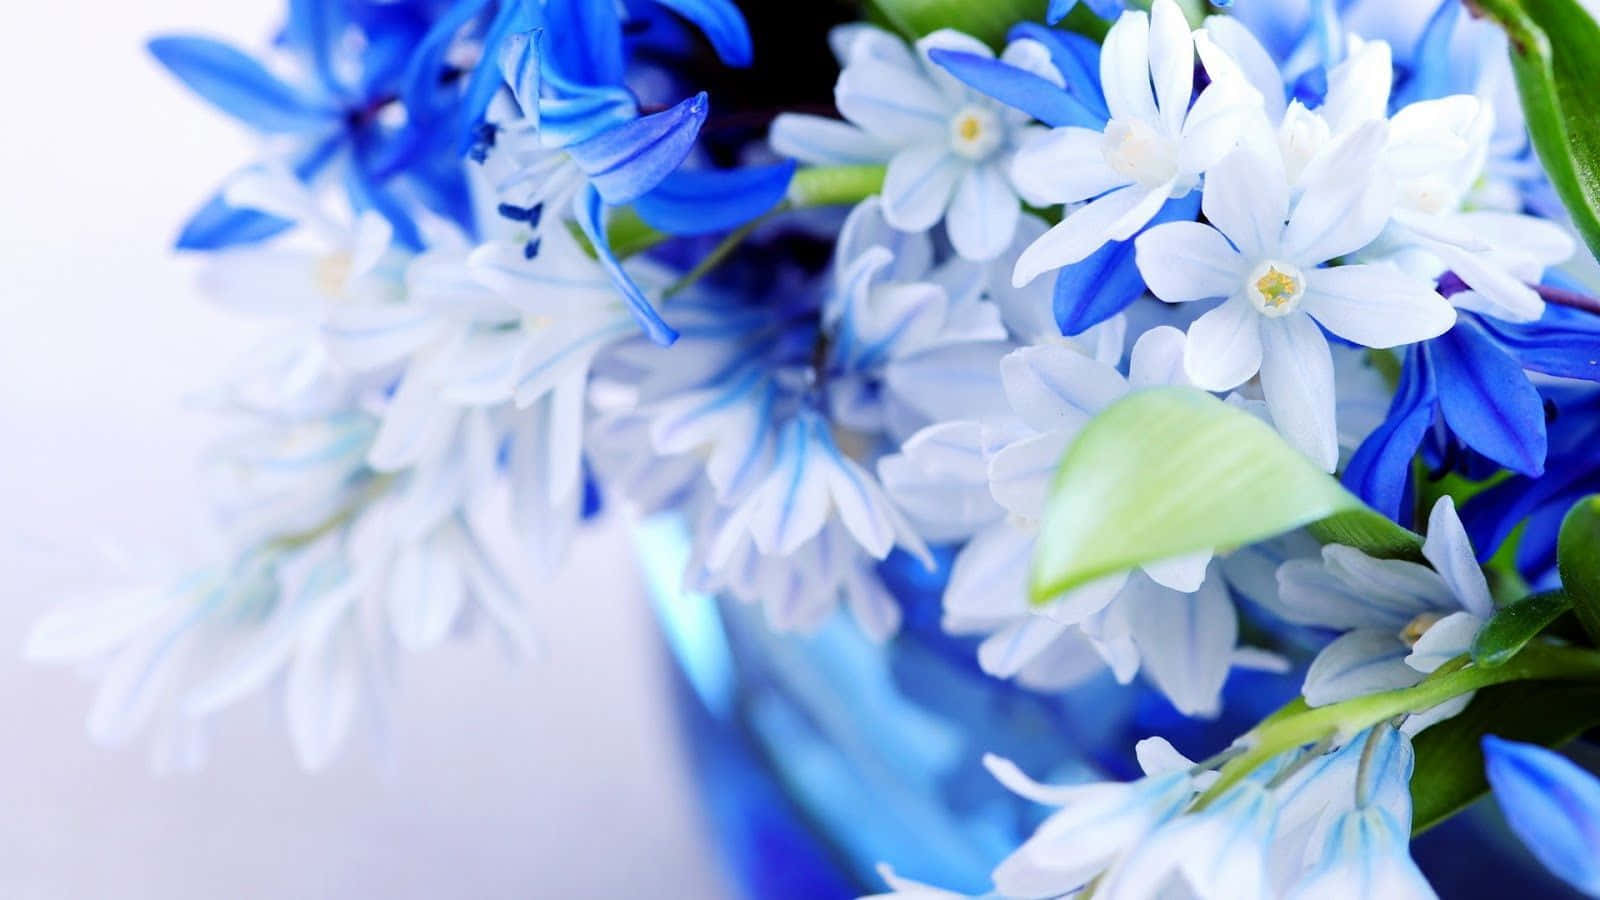 Blåoch Vita Blommor I En Vas